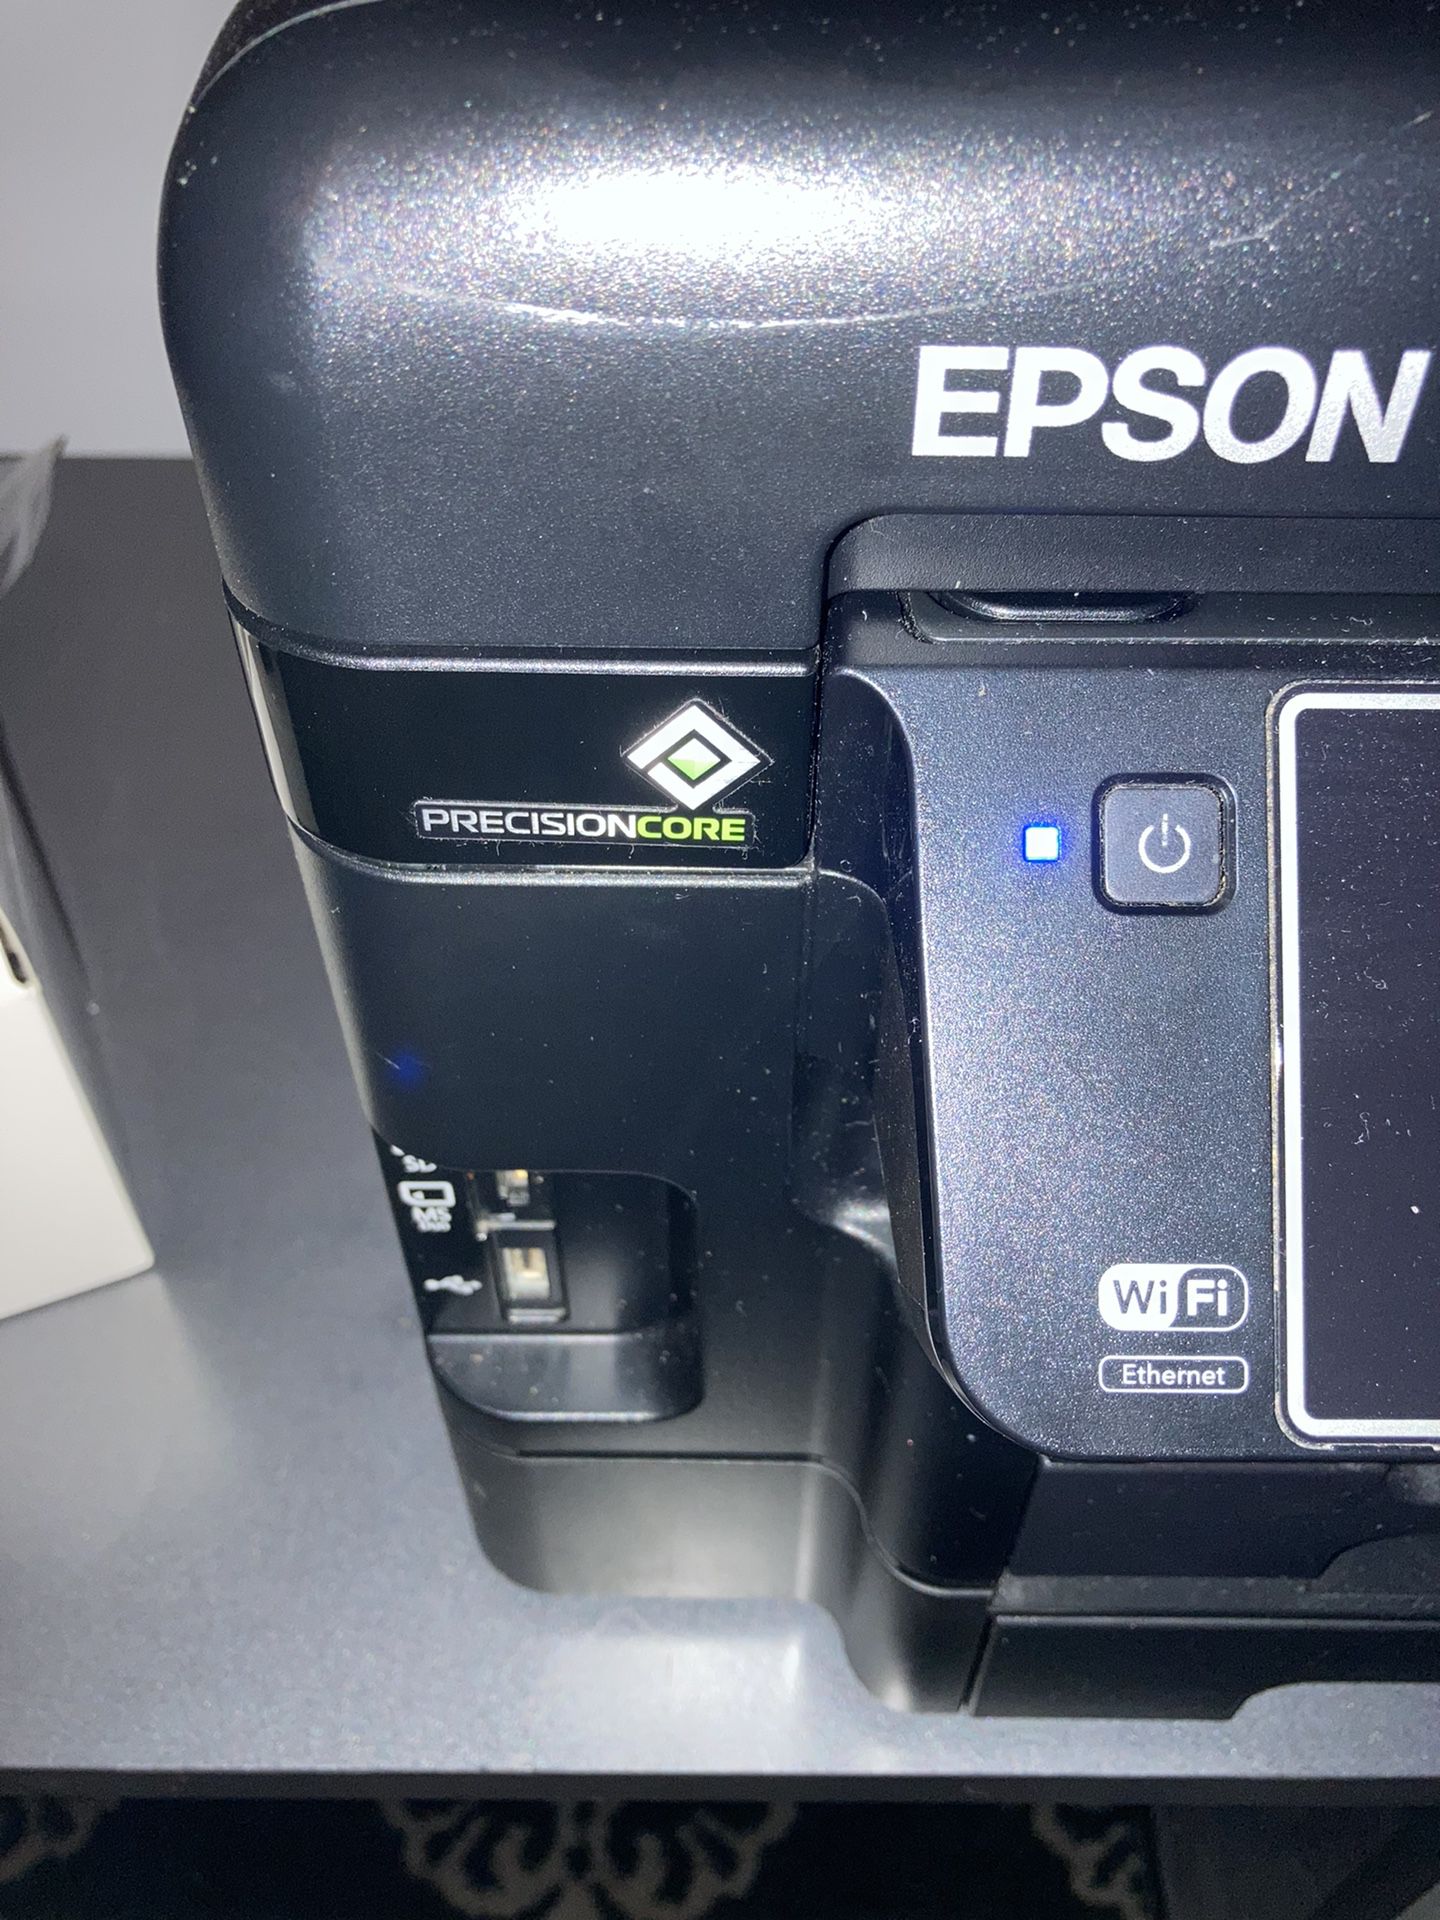 Epson Workforce WF-3640 Precision Core 